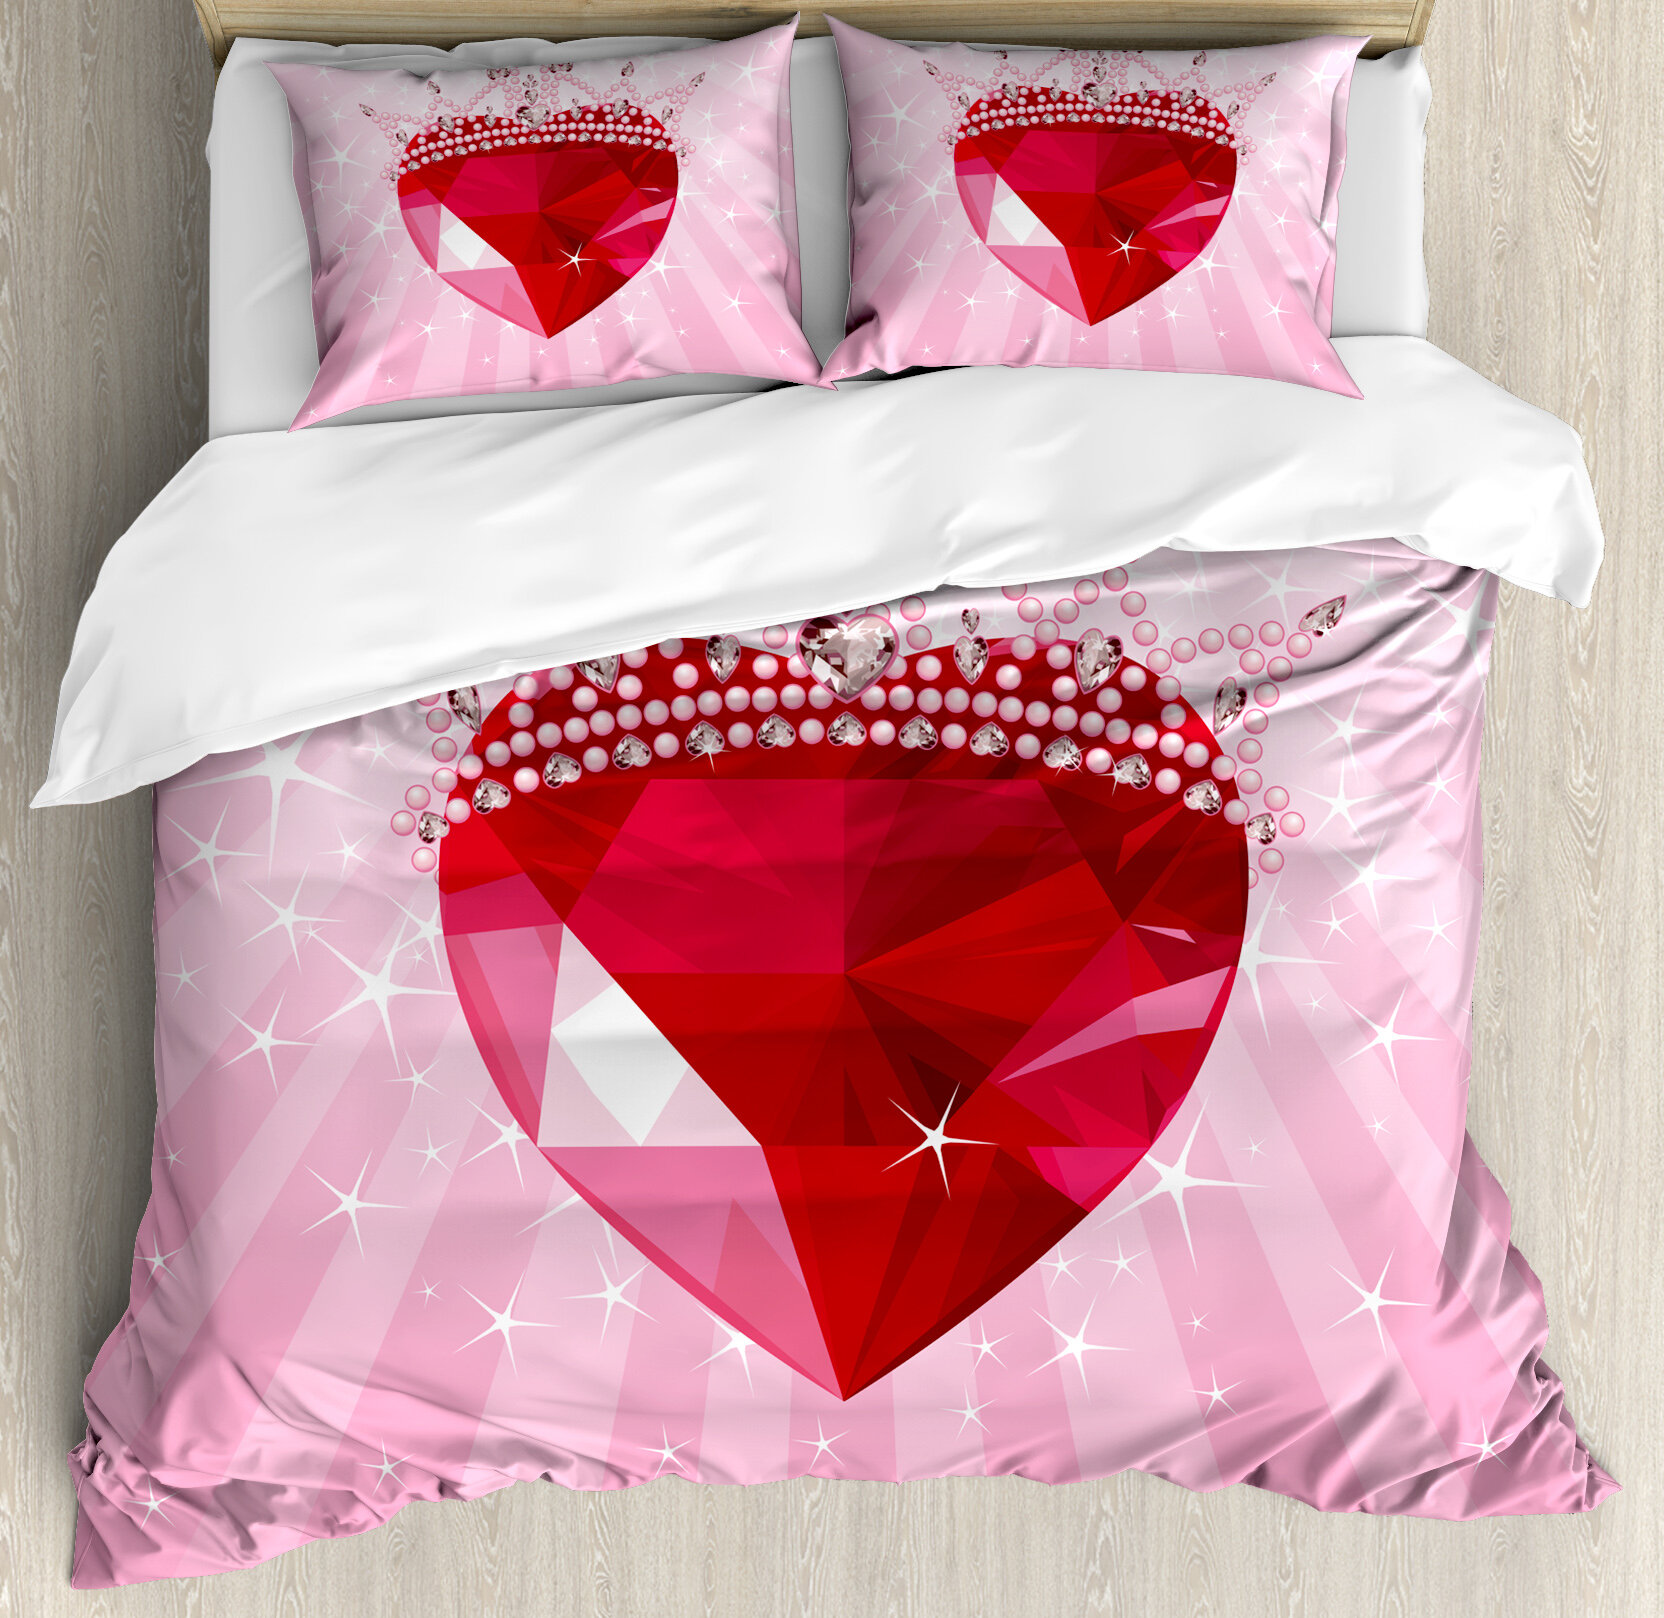 4pcs Cartoon Printed Pink Gray Star Bedding Boys Girls Reversible Hidden Zipper hot Hearts Kids Duvet Cover Sets King